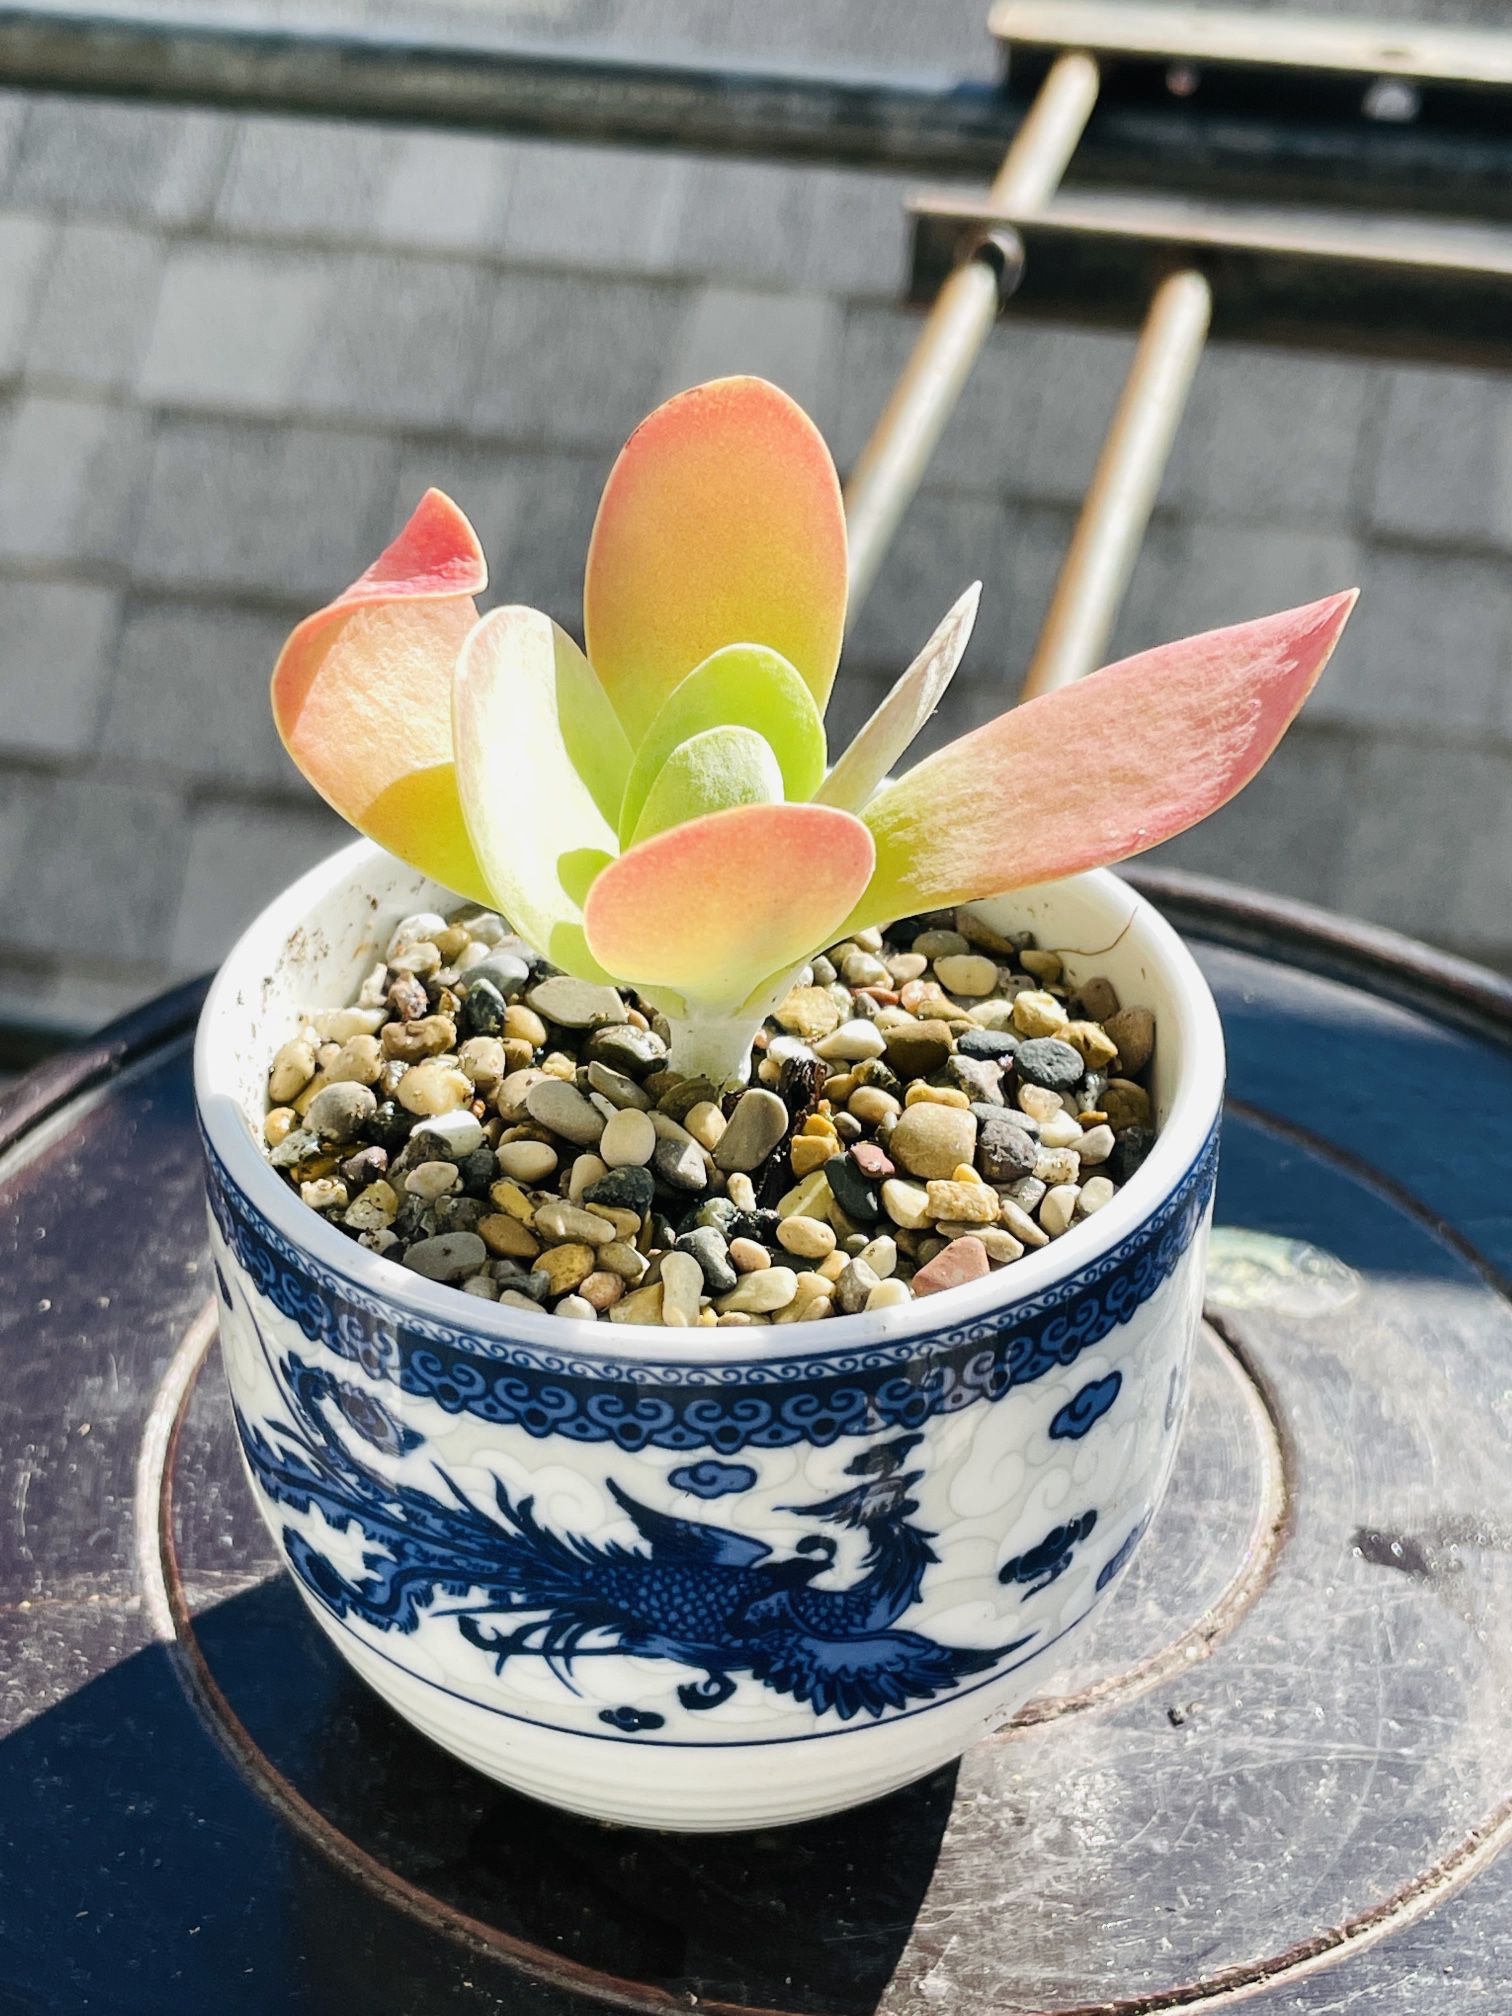 #11. Succulent In china Pot